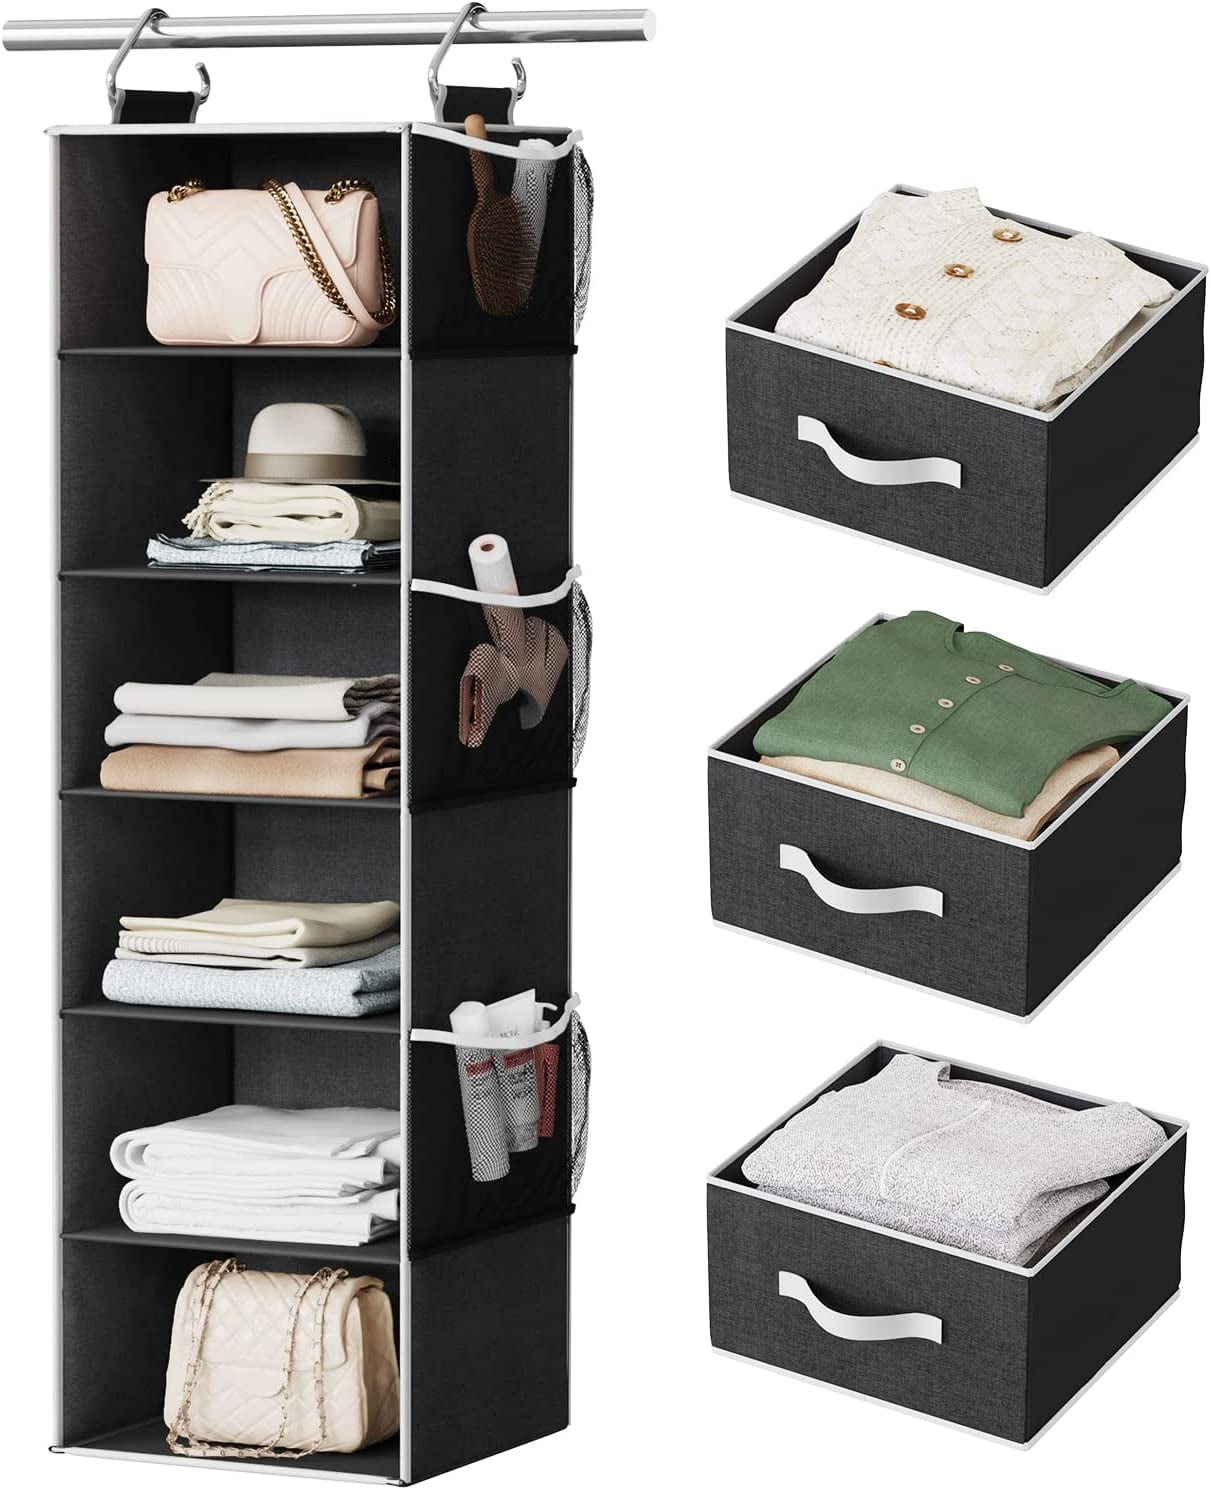 StorageWorks 3-Shelf Hanging Closet Organizer, Adjustable Hanging Closet Organizers and Storage, Canvas, Gray, 13”W x 13”D x 27.